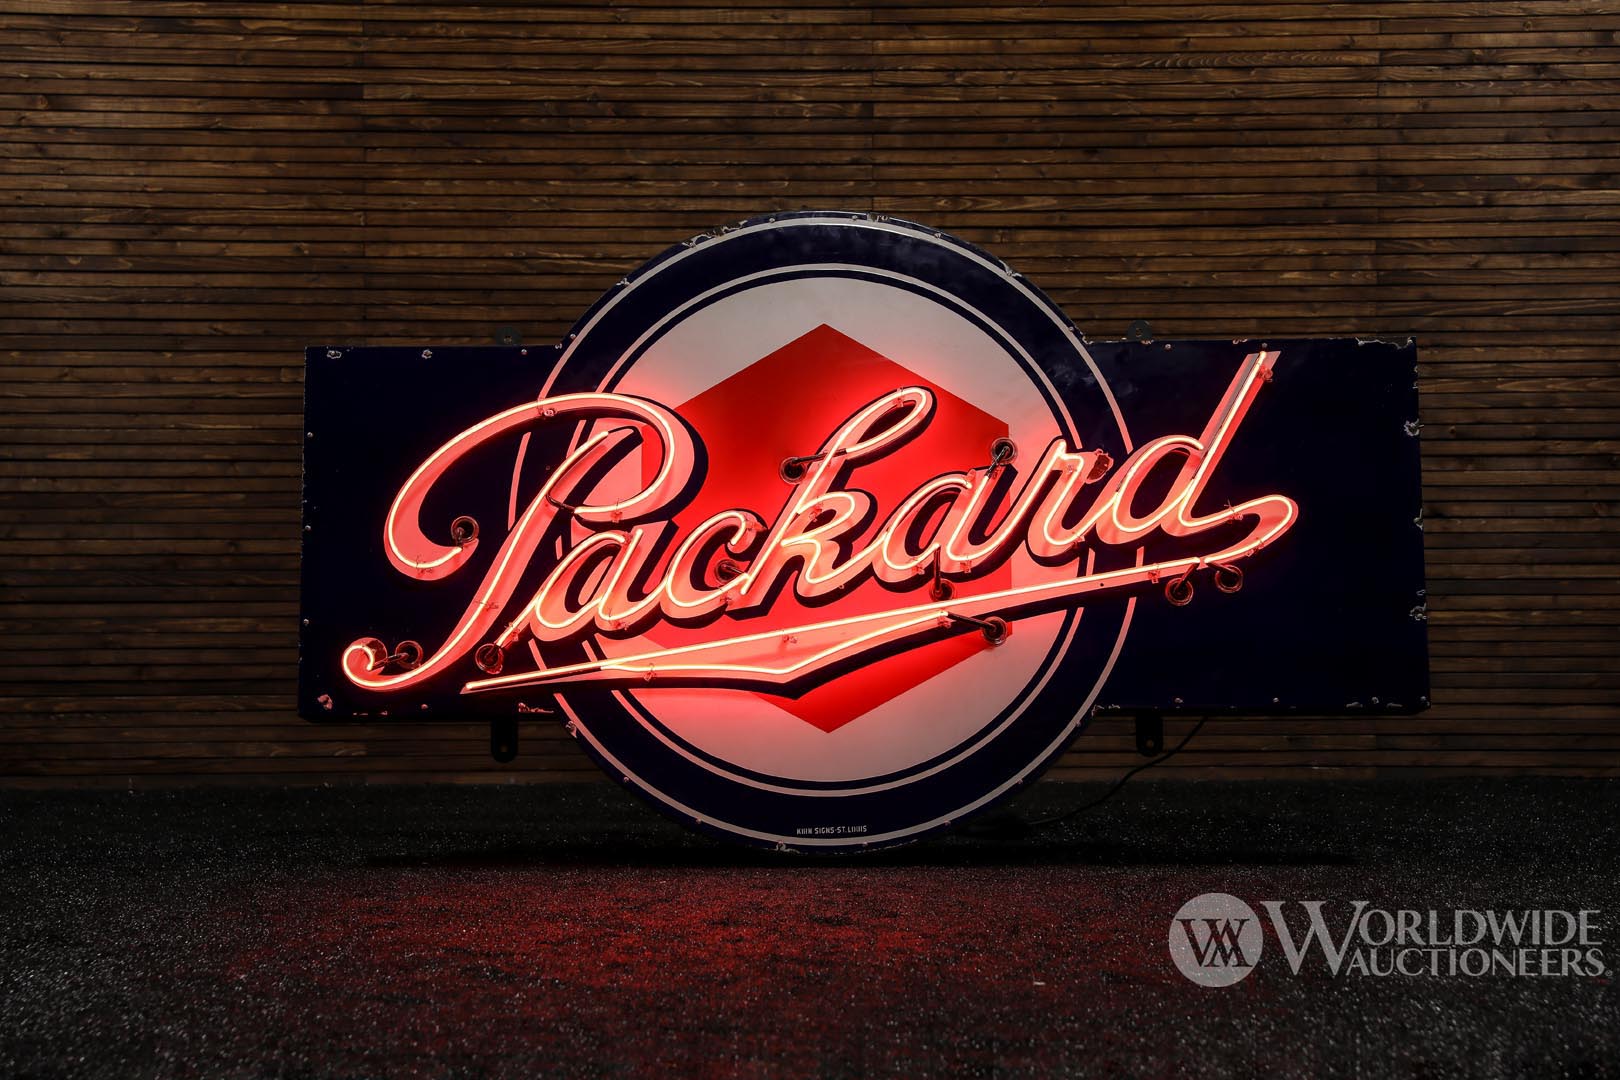  Packard Dealer Neon Sign  